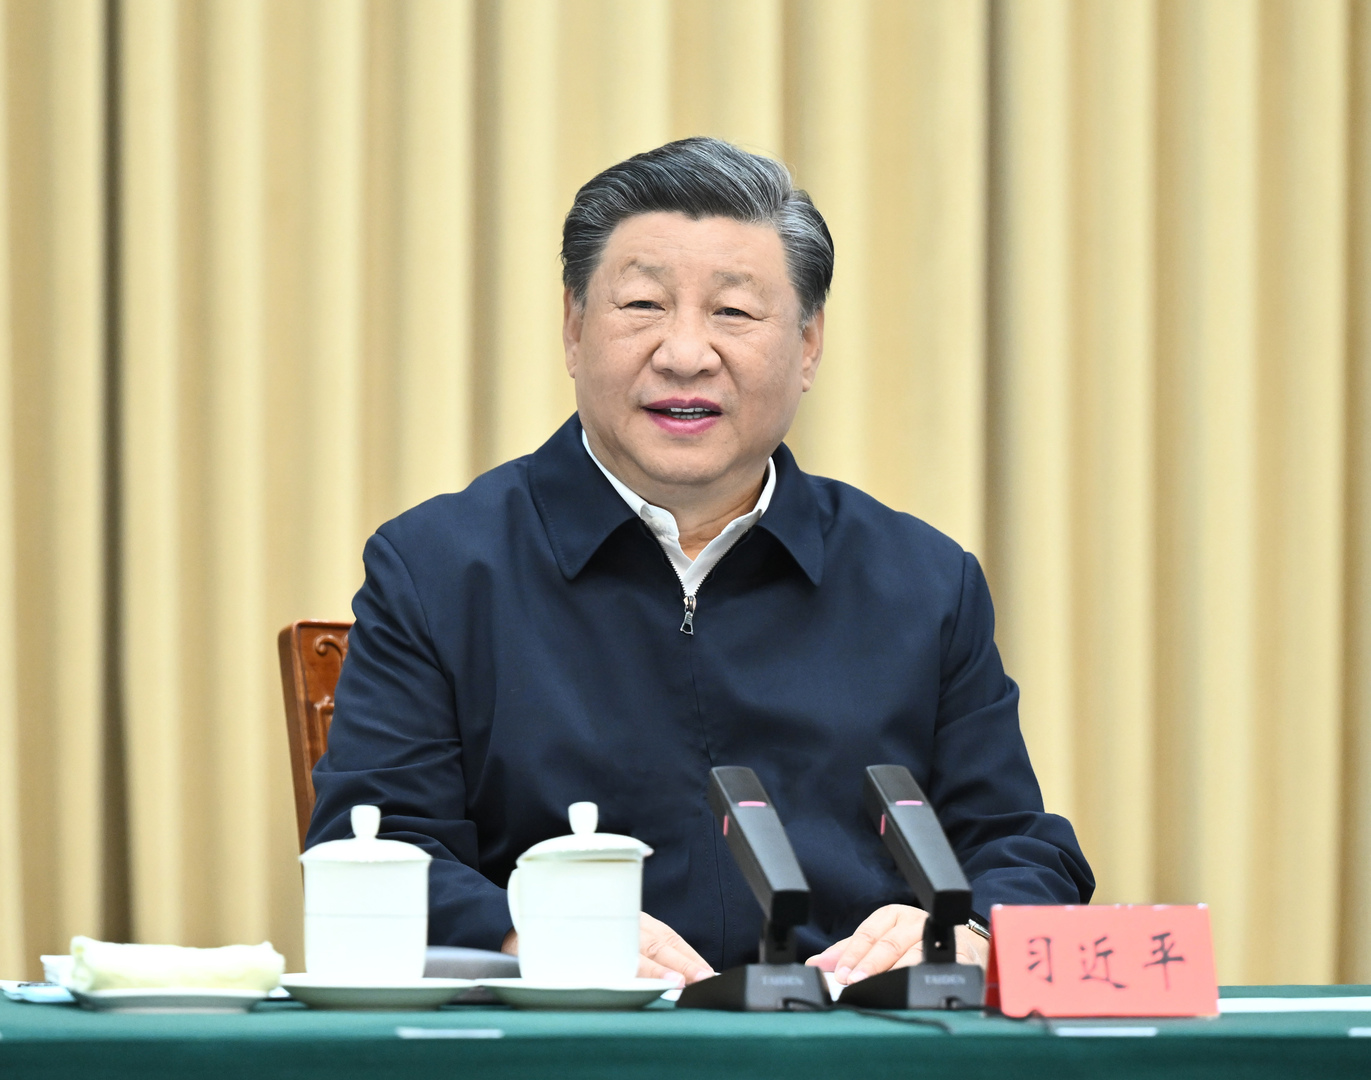 الرئيس الصيني يزور إقليم شينجيانغ ويدعو للسيطرة على الأنشطة الدينية غير القانونية